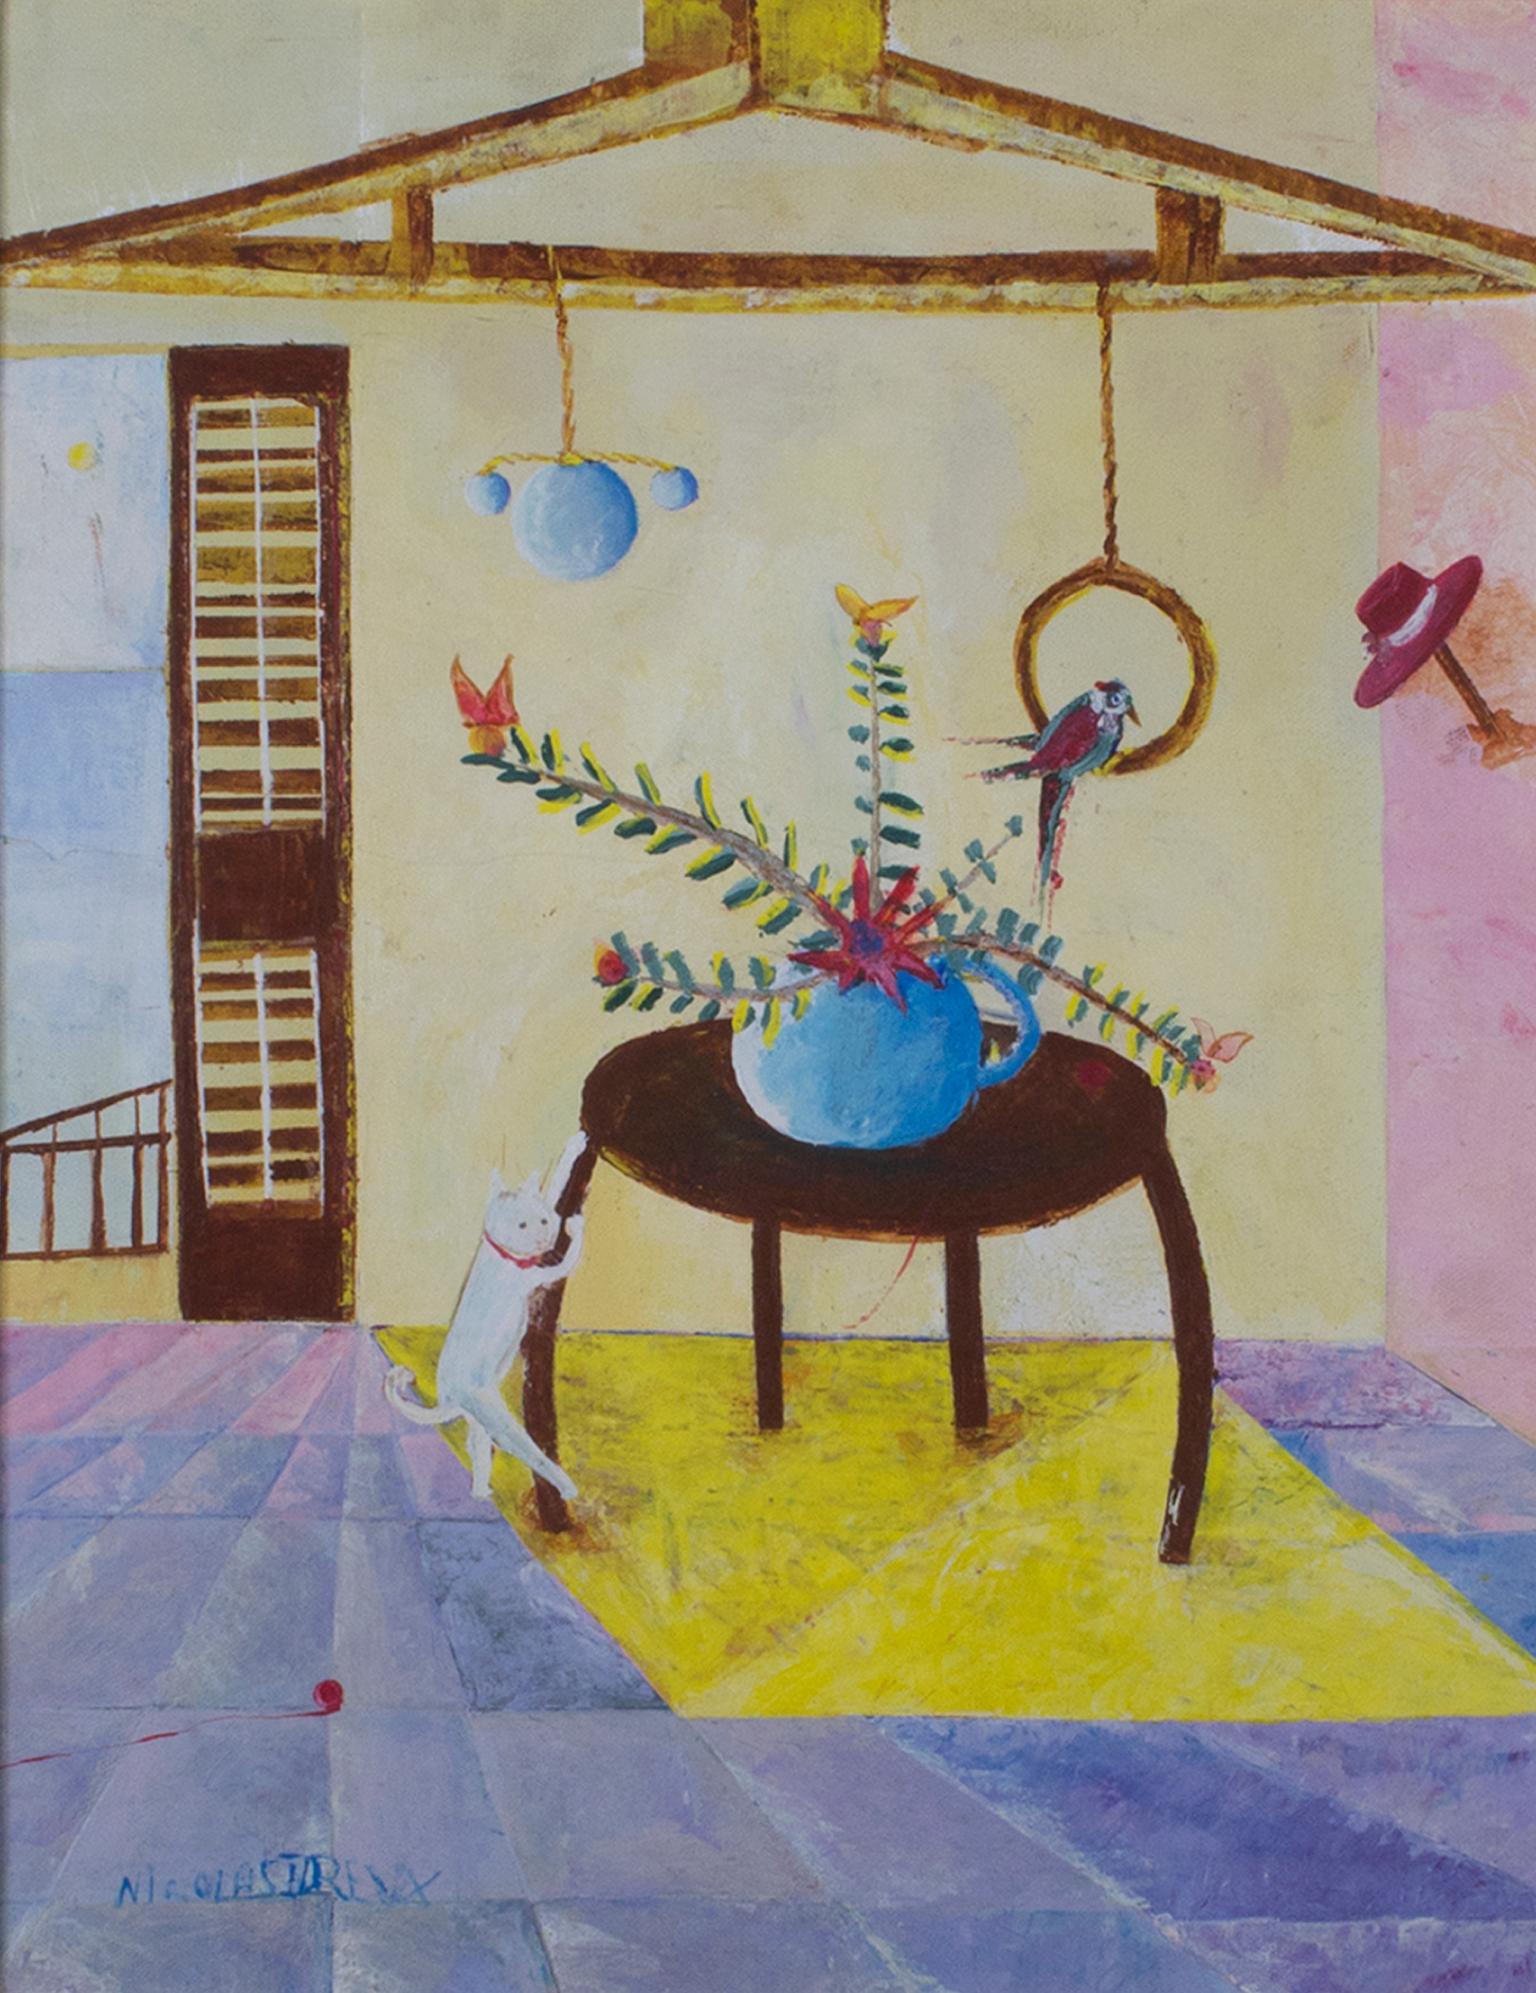 "Cat Scratching Table" ist ein Original-Ölgemälde auf Leinwand von Nicolas Dreux. Der Künstler hat das Werk unten links signiert. Es zeigt eine Katze und einen Vogel in einem pastellfarbenen Innenraum.

18" x 14" Kunst
27 1/4" x 23 1/4"